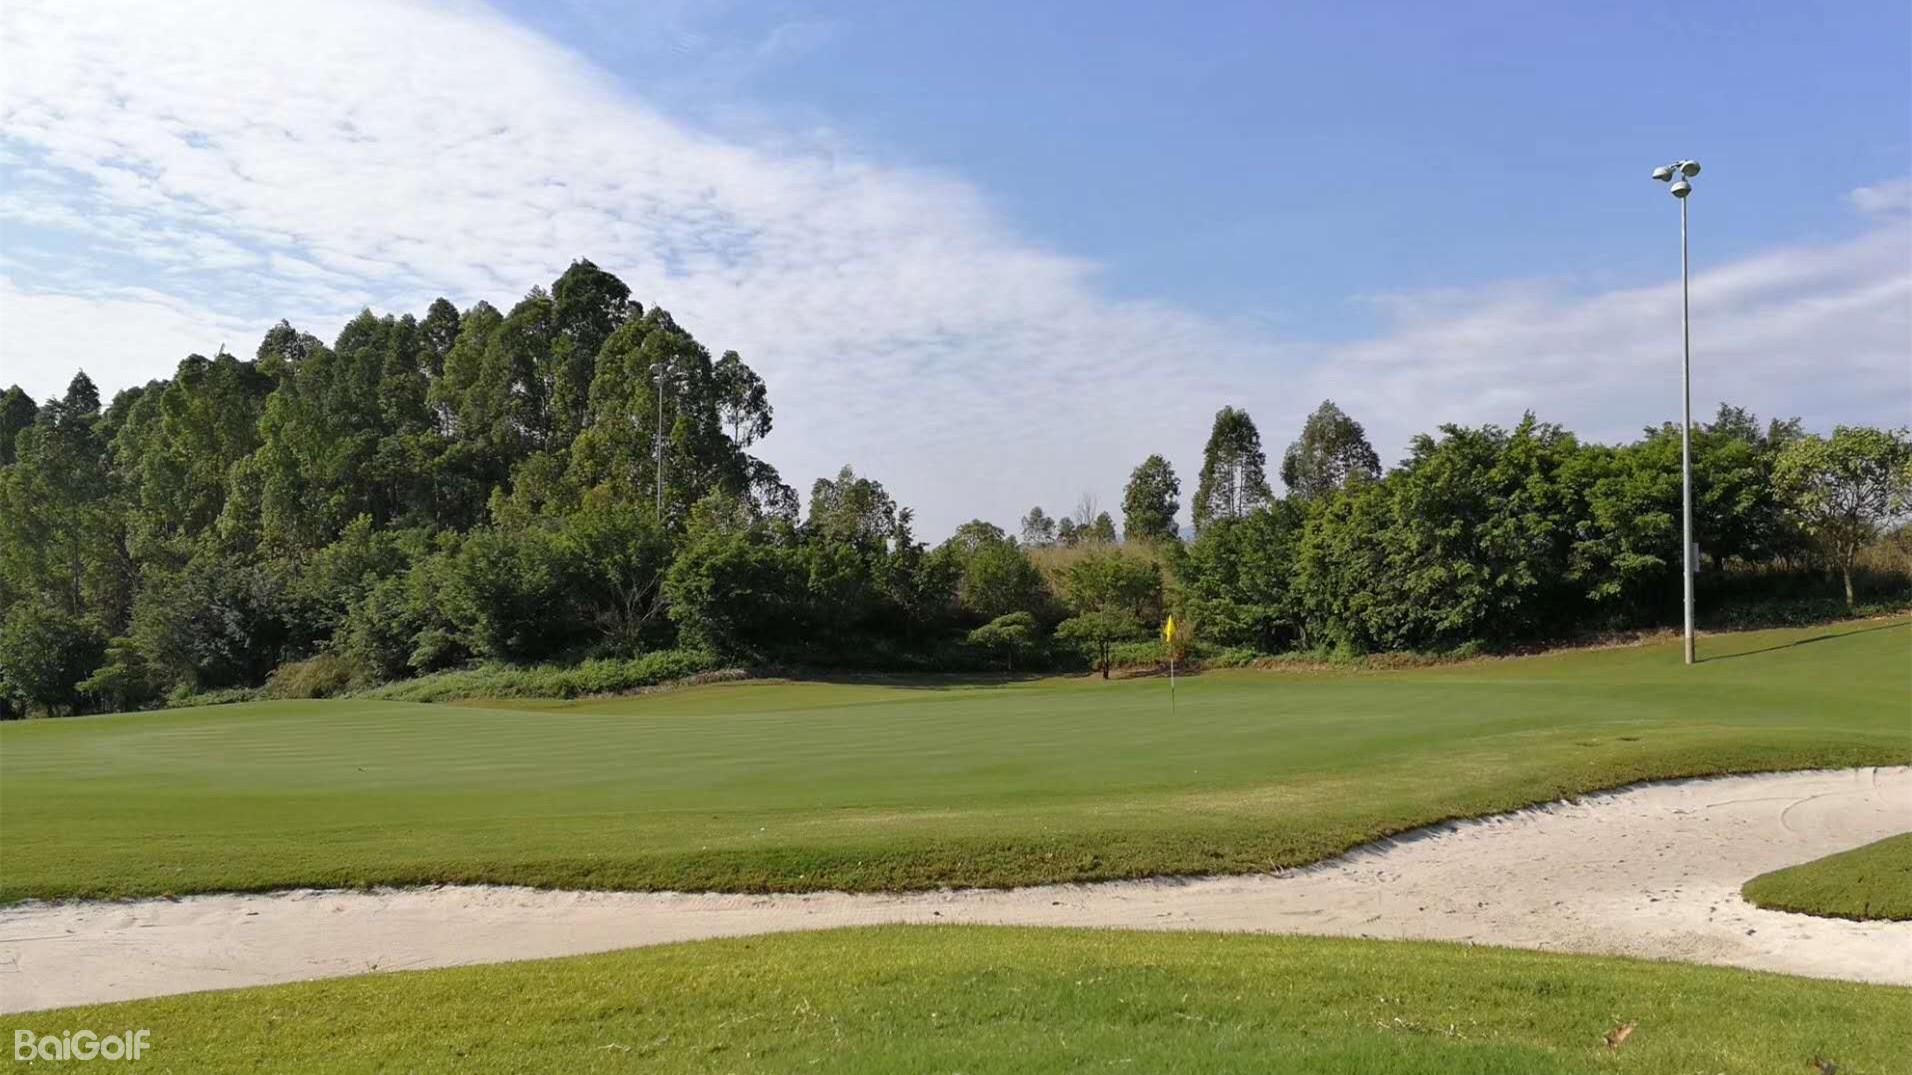 竞技高尔夫俱乐部 | 百高（BaiGolf） - 高尔夫球场预订,高尔夫旅游,日本高尔夫,泰国高尔夫,越南高尔夫,中国,韩国,亚洲及太平洋高尔夫